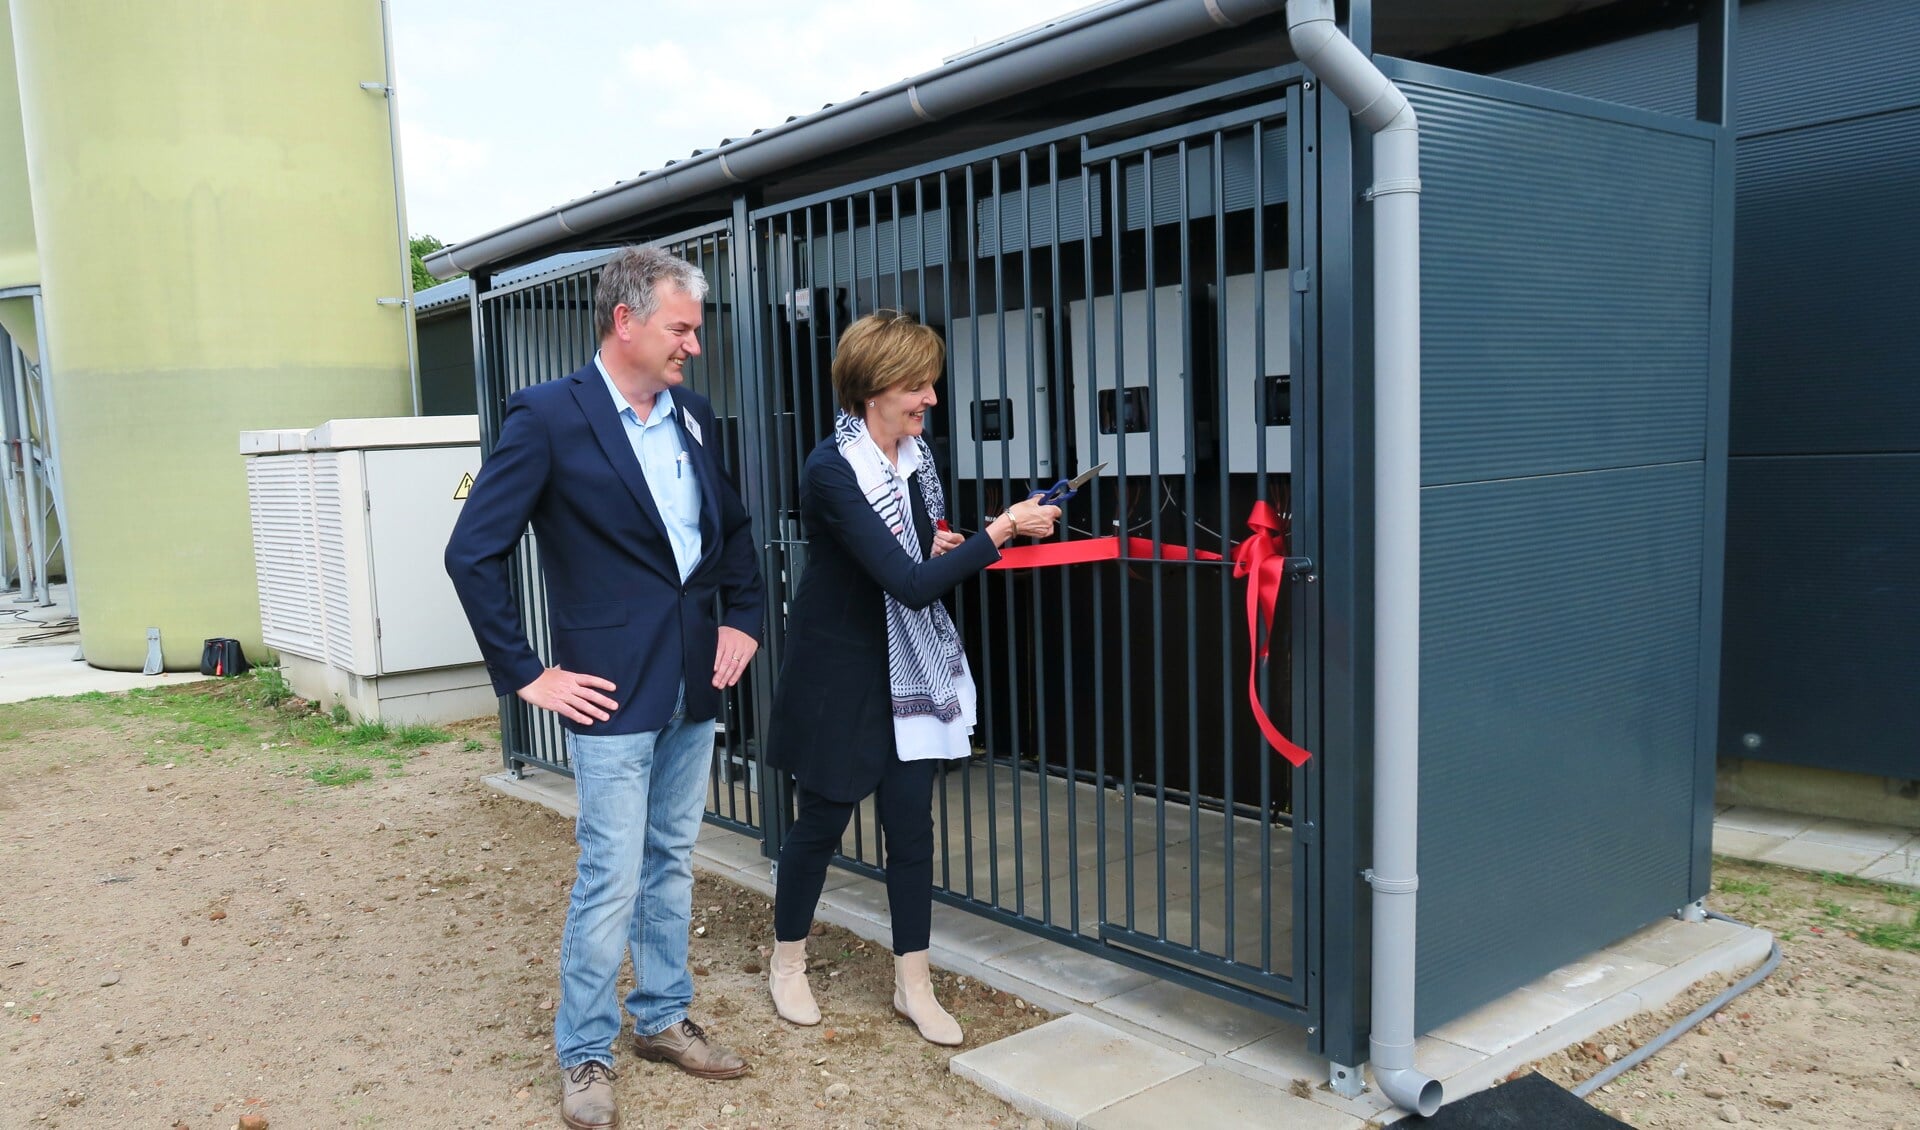 De officiële opening van ‘Zonnig Zieuwent’ door burgemeester Annette Bronsvoort. 